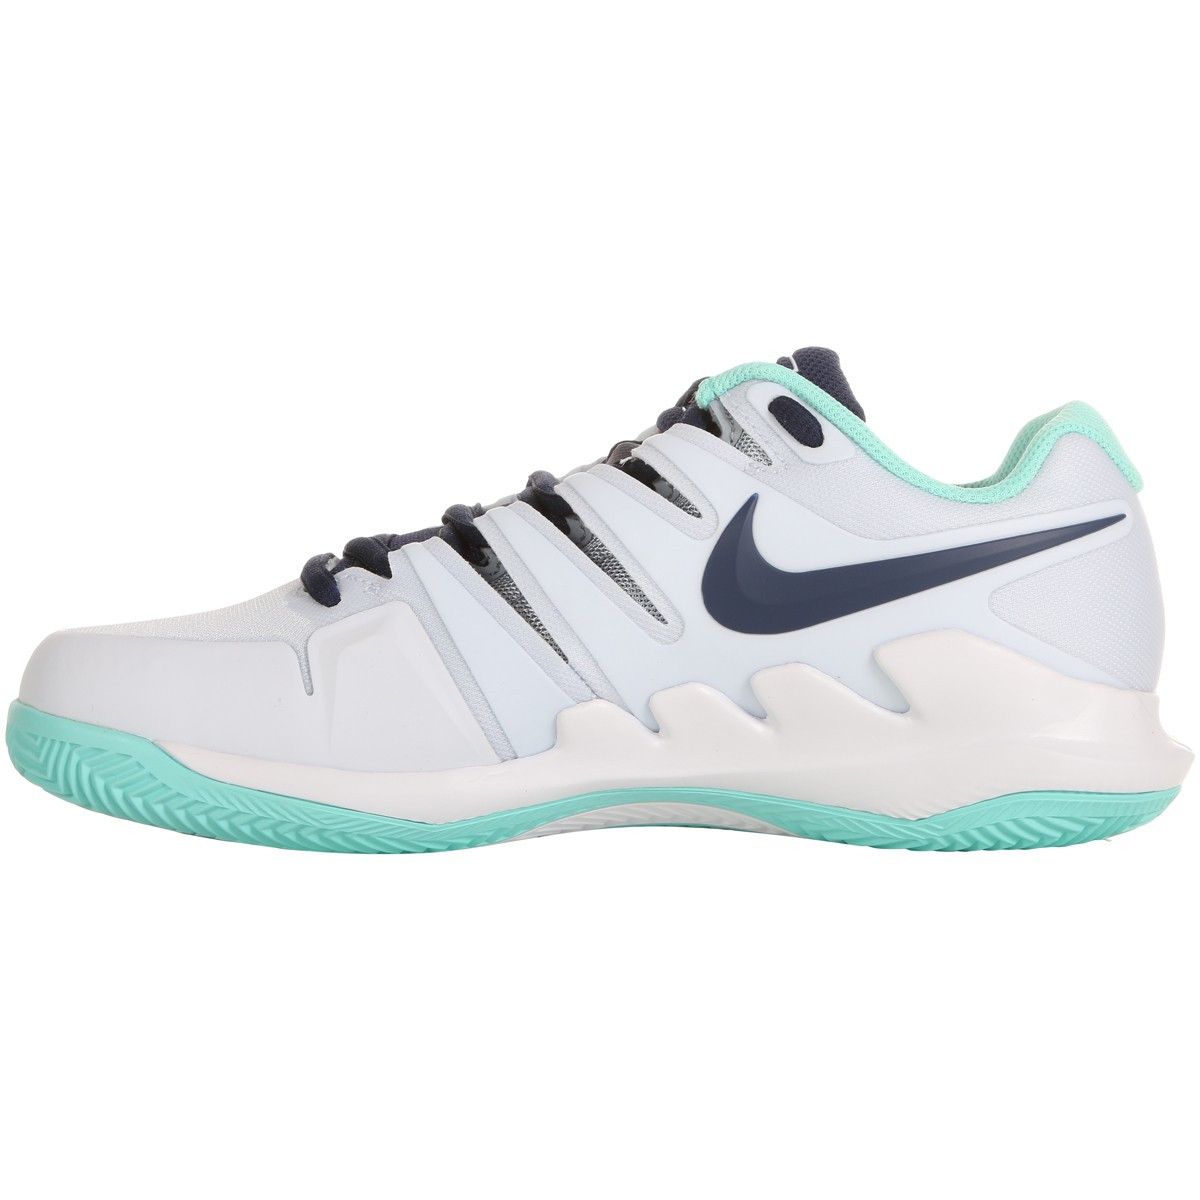 Nike Air Zoom Vapor X Clay Women's Tennis Shoes AA8025-010